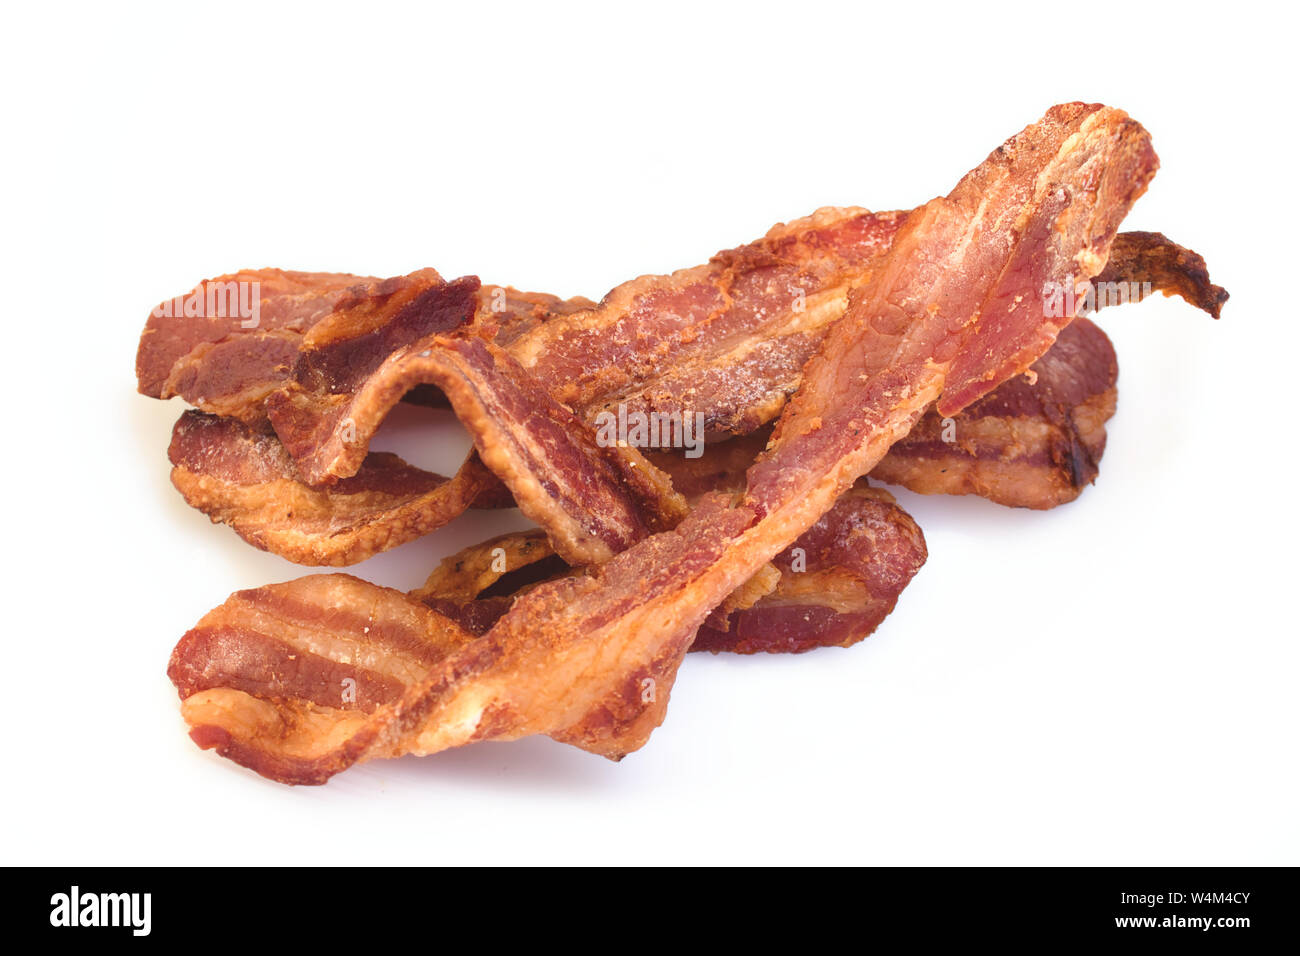 Crispy bacon rashers isolated against a white background Stock Photo